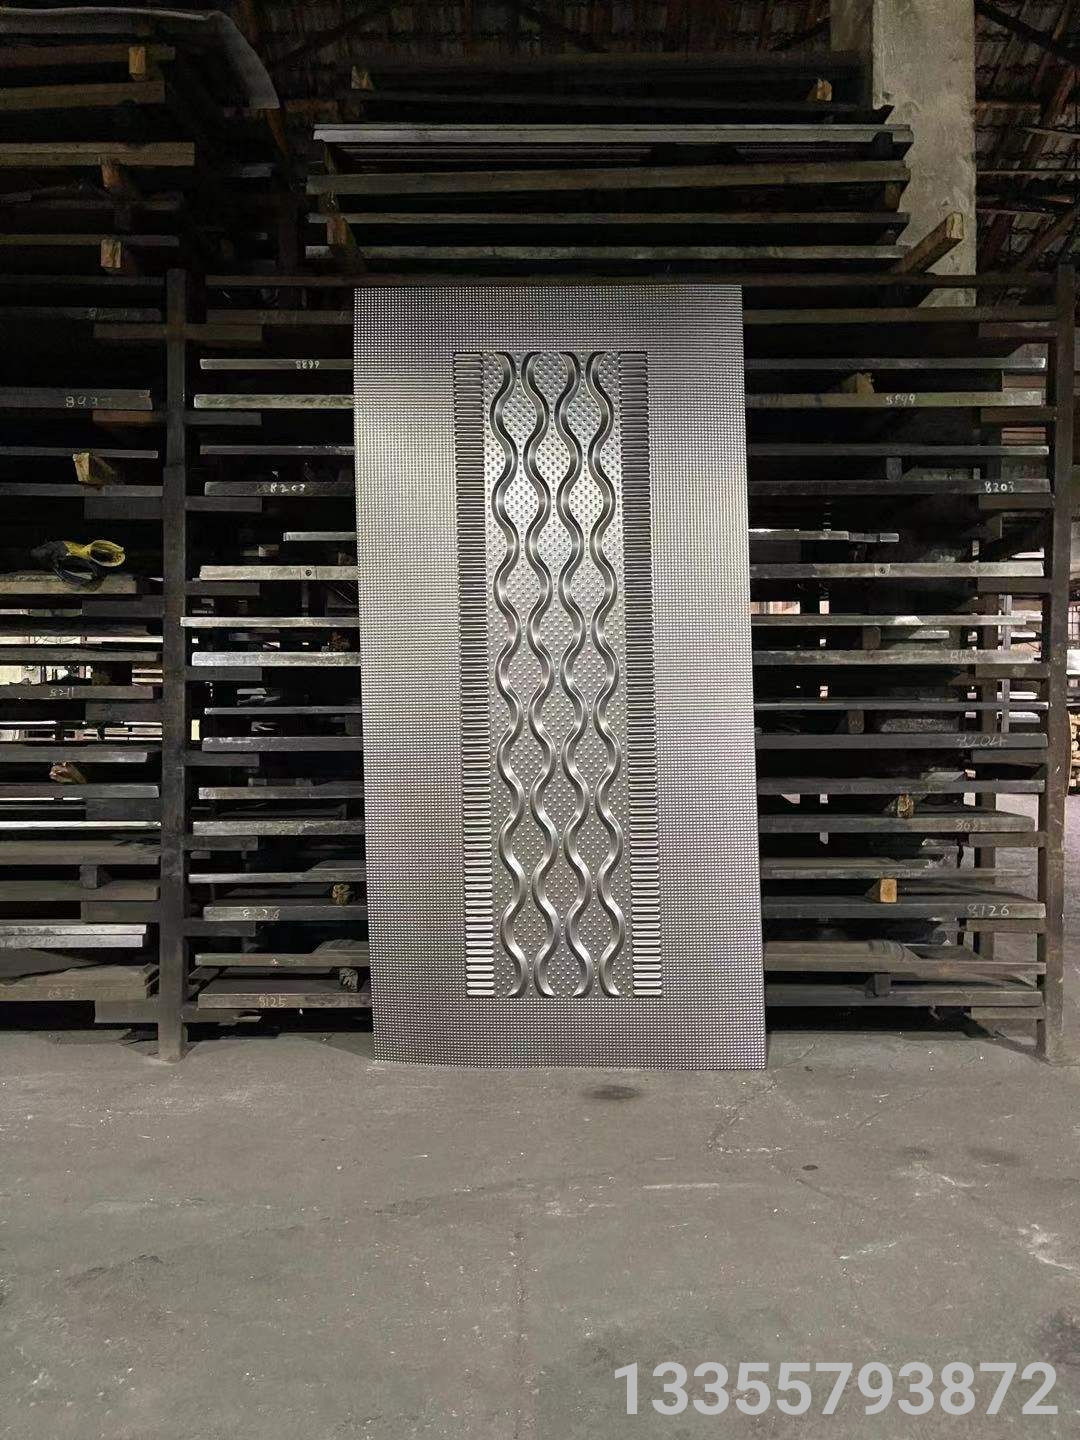 Anti theft door sheet steel galvanized Imitation cast aluminum factory directly sell door skin door penal